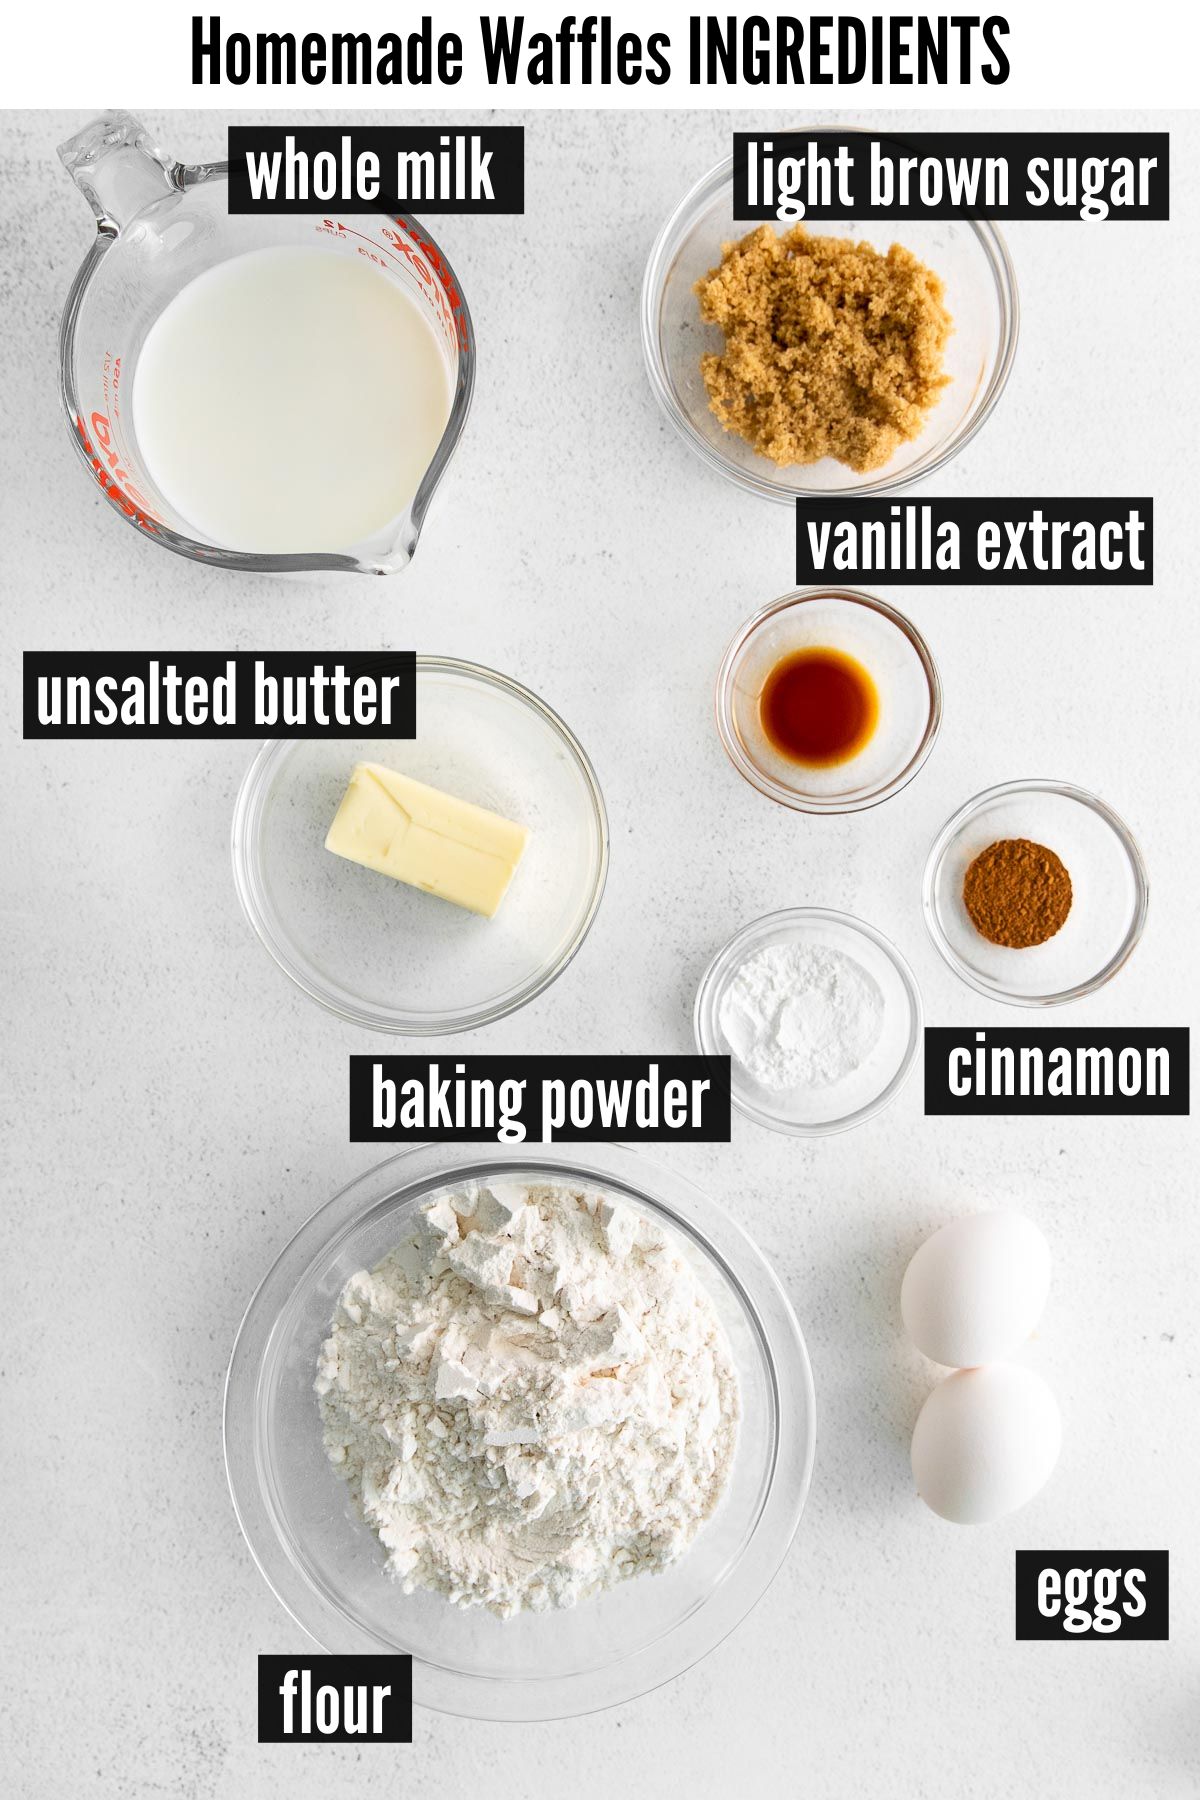 homamde waffles labelled ingredients.